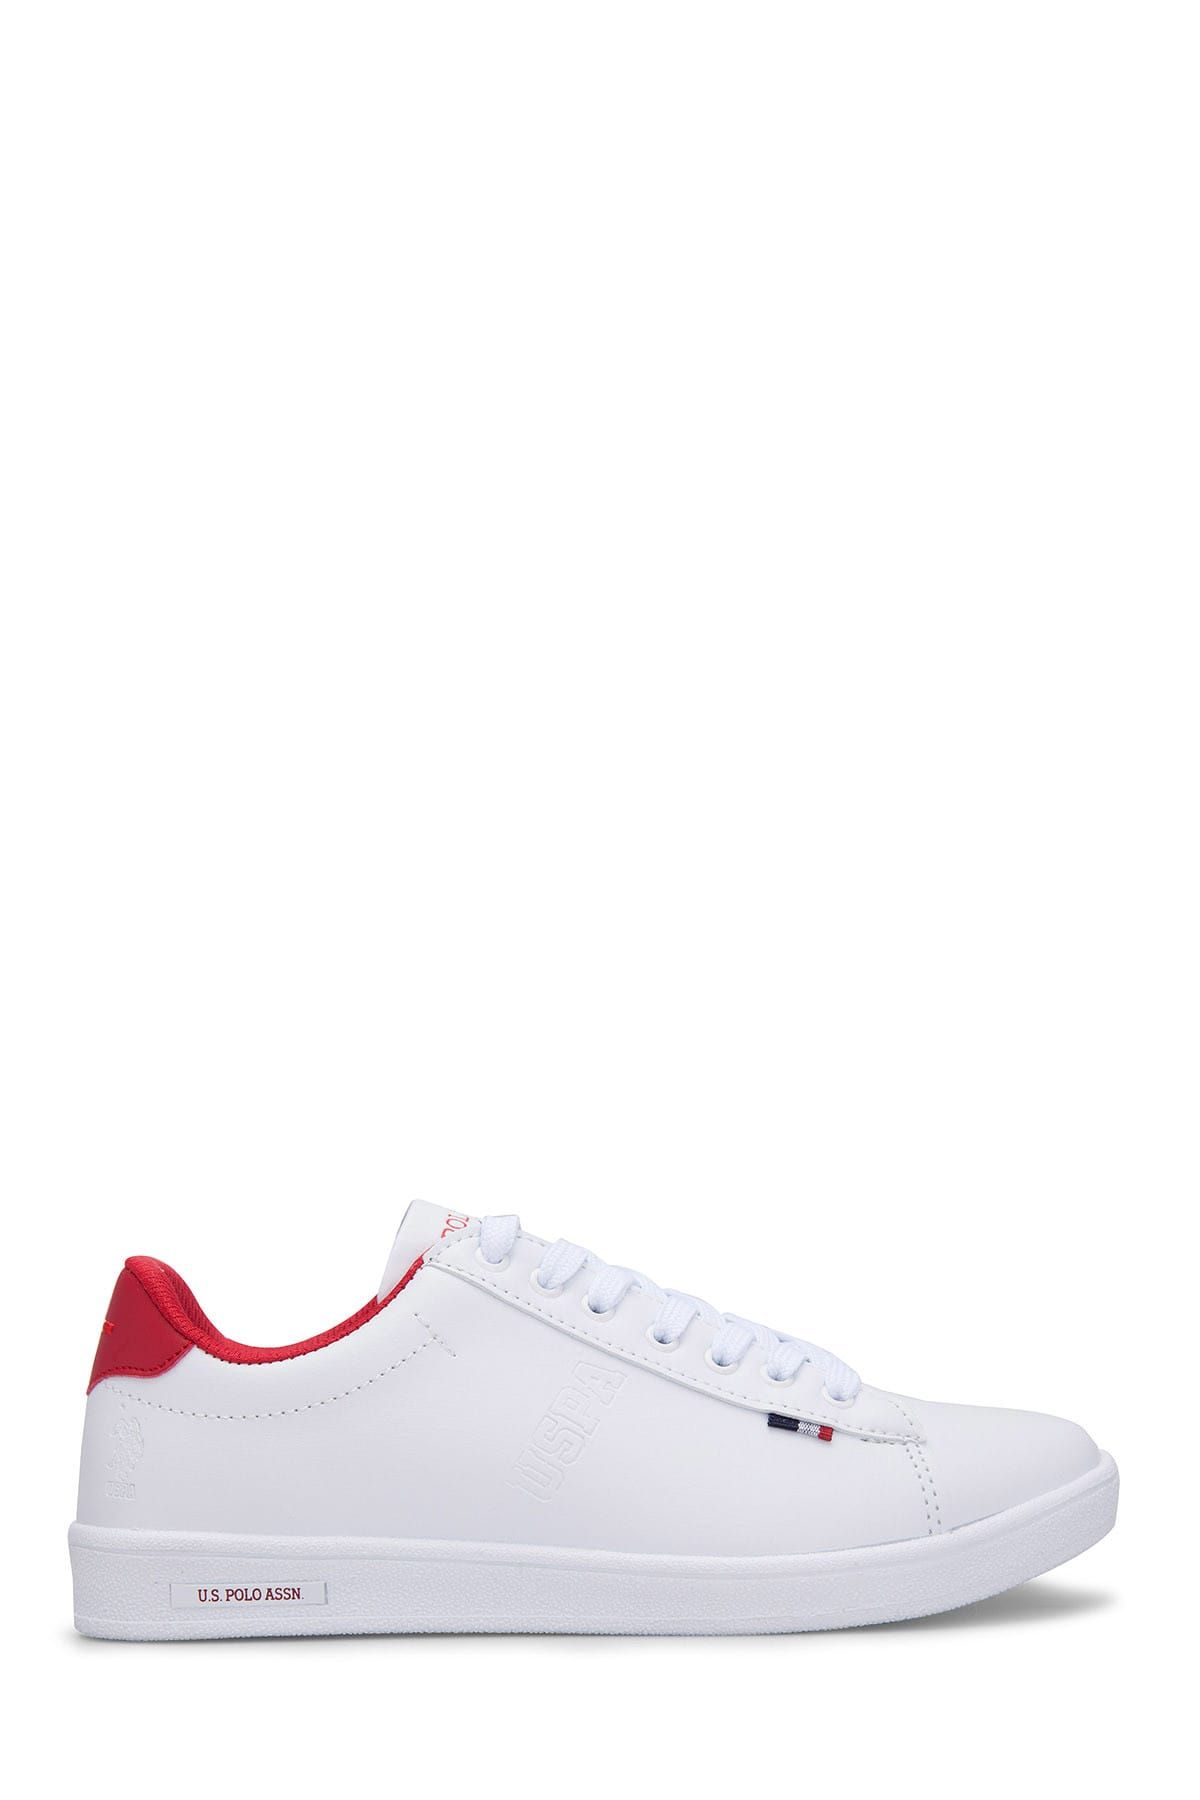 U.S. Polo Assn. Beyaz Kırmızı Kadın Sneaker